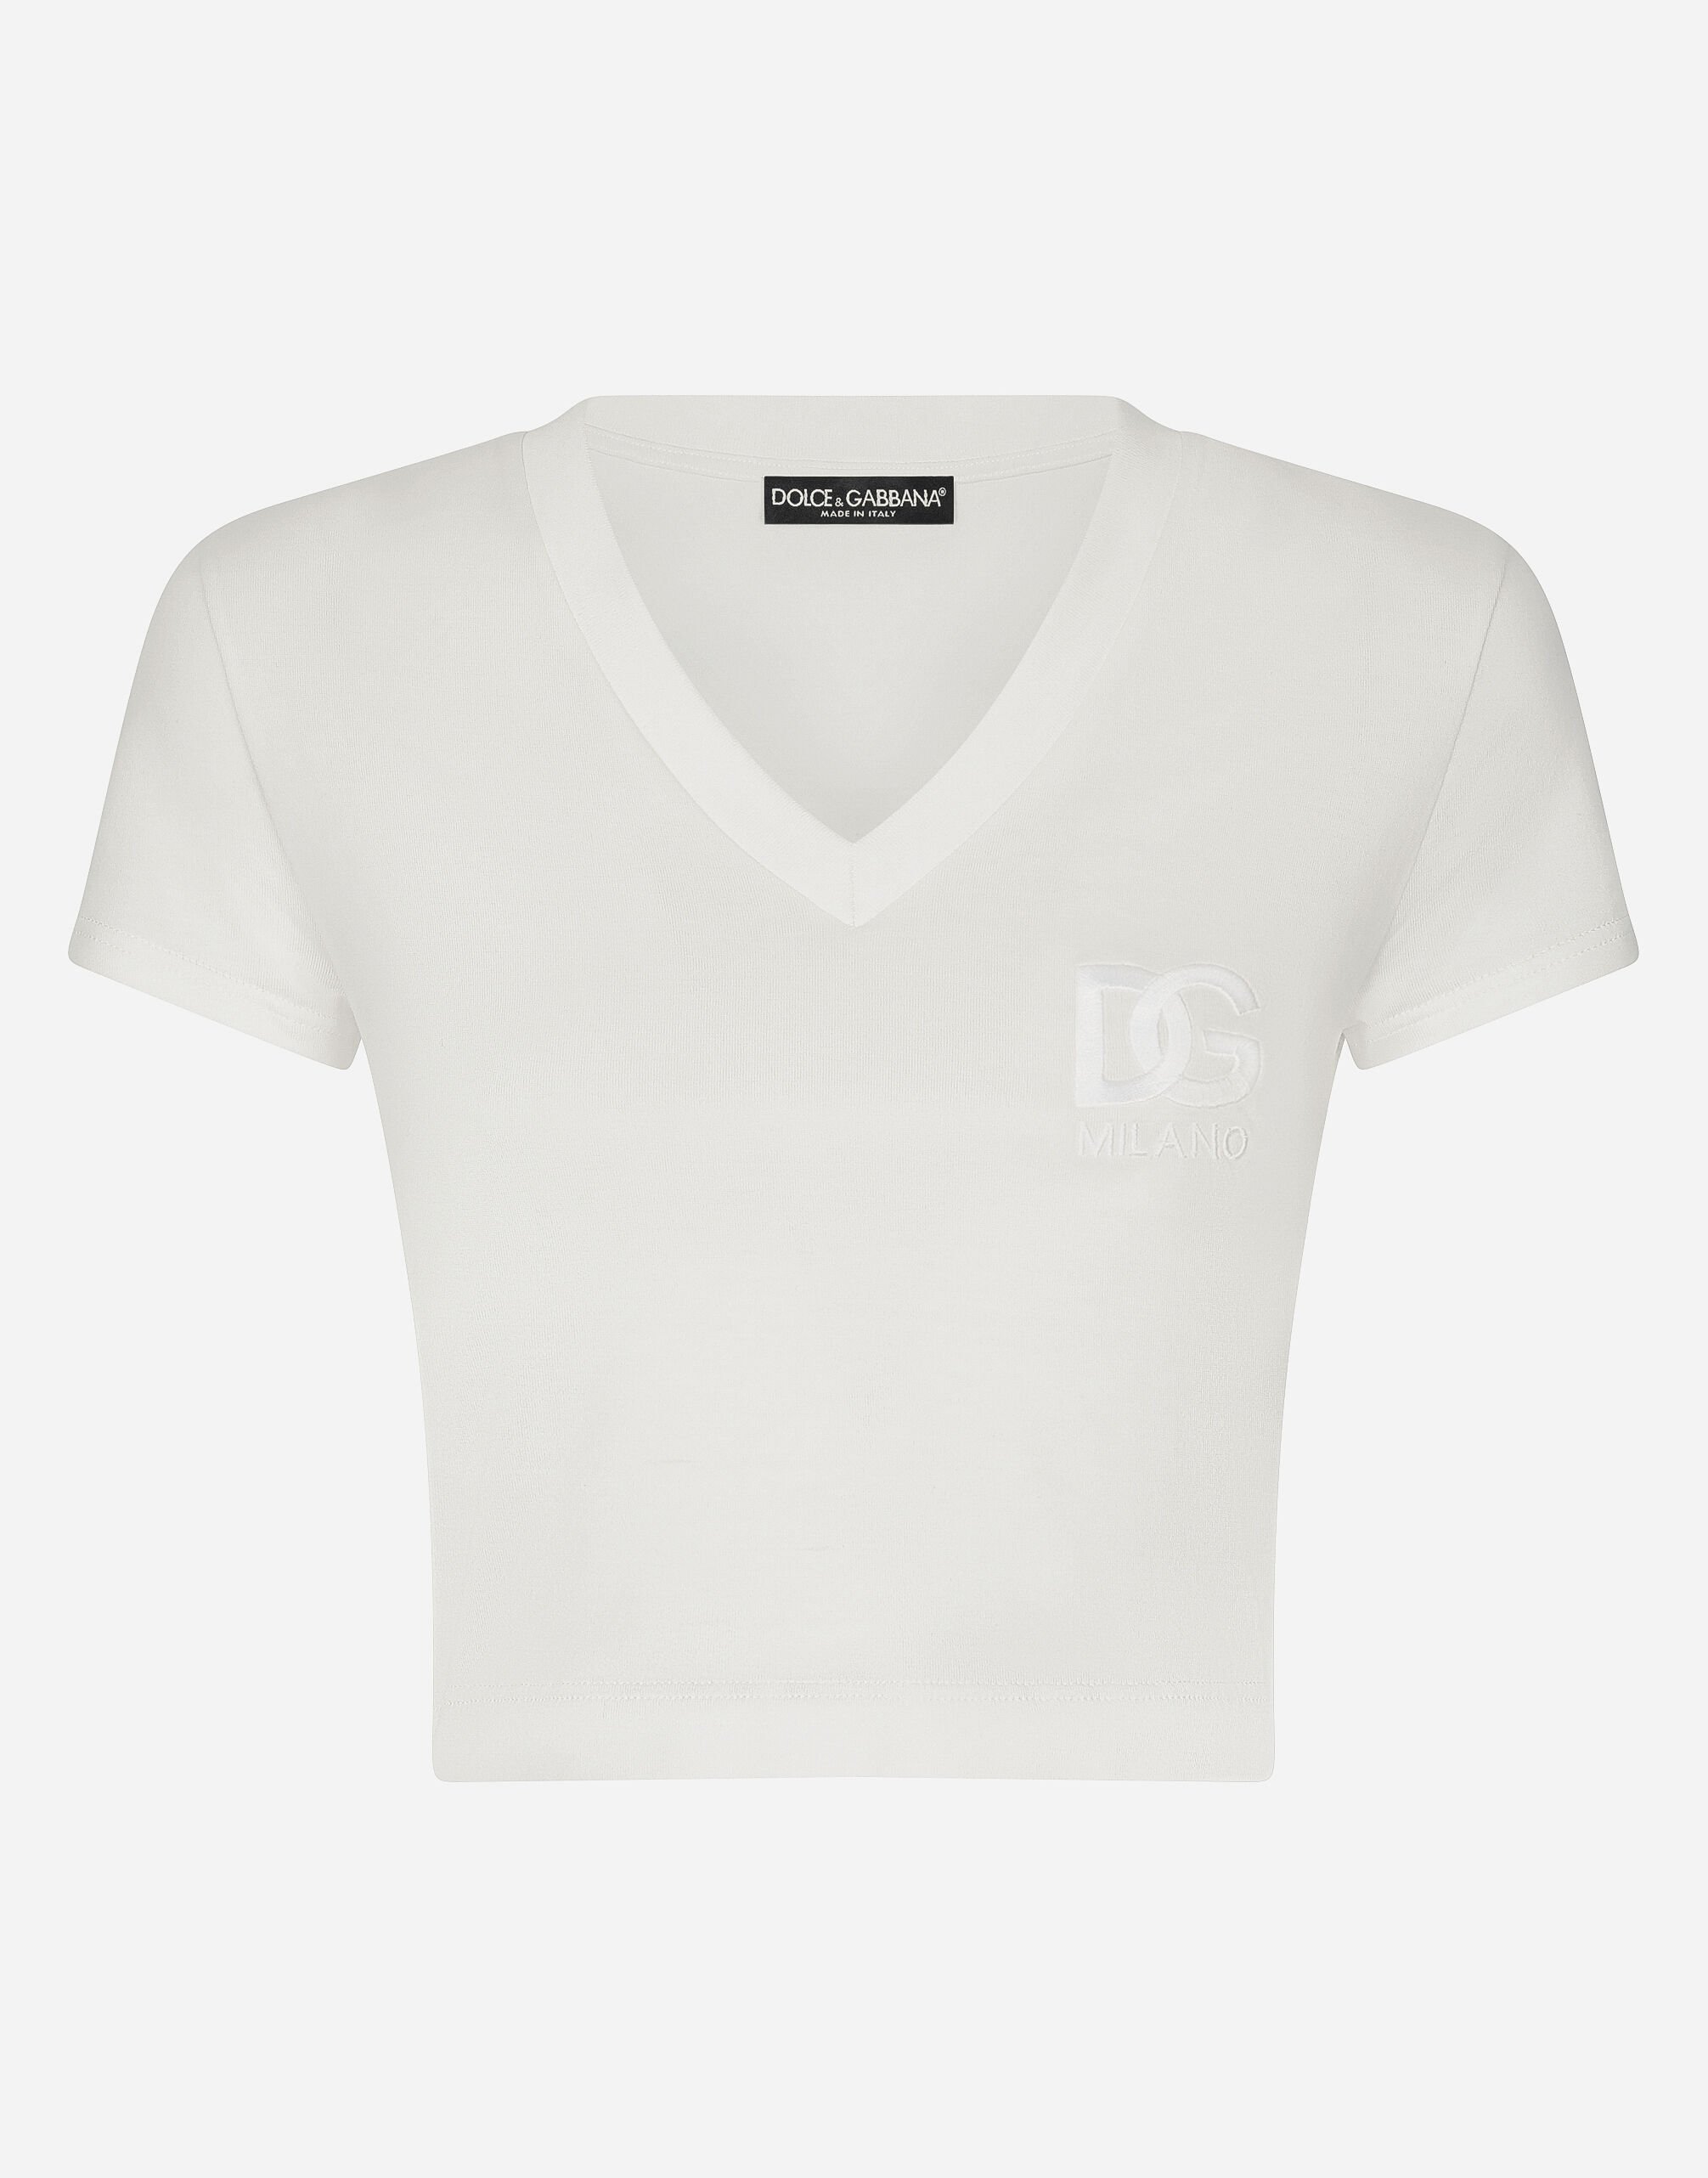 Dolce & Gabbana Short-sleeved T-shirt with DG logo White F8T00ZGDCBT